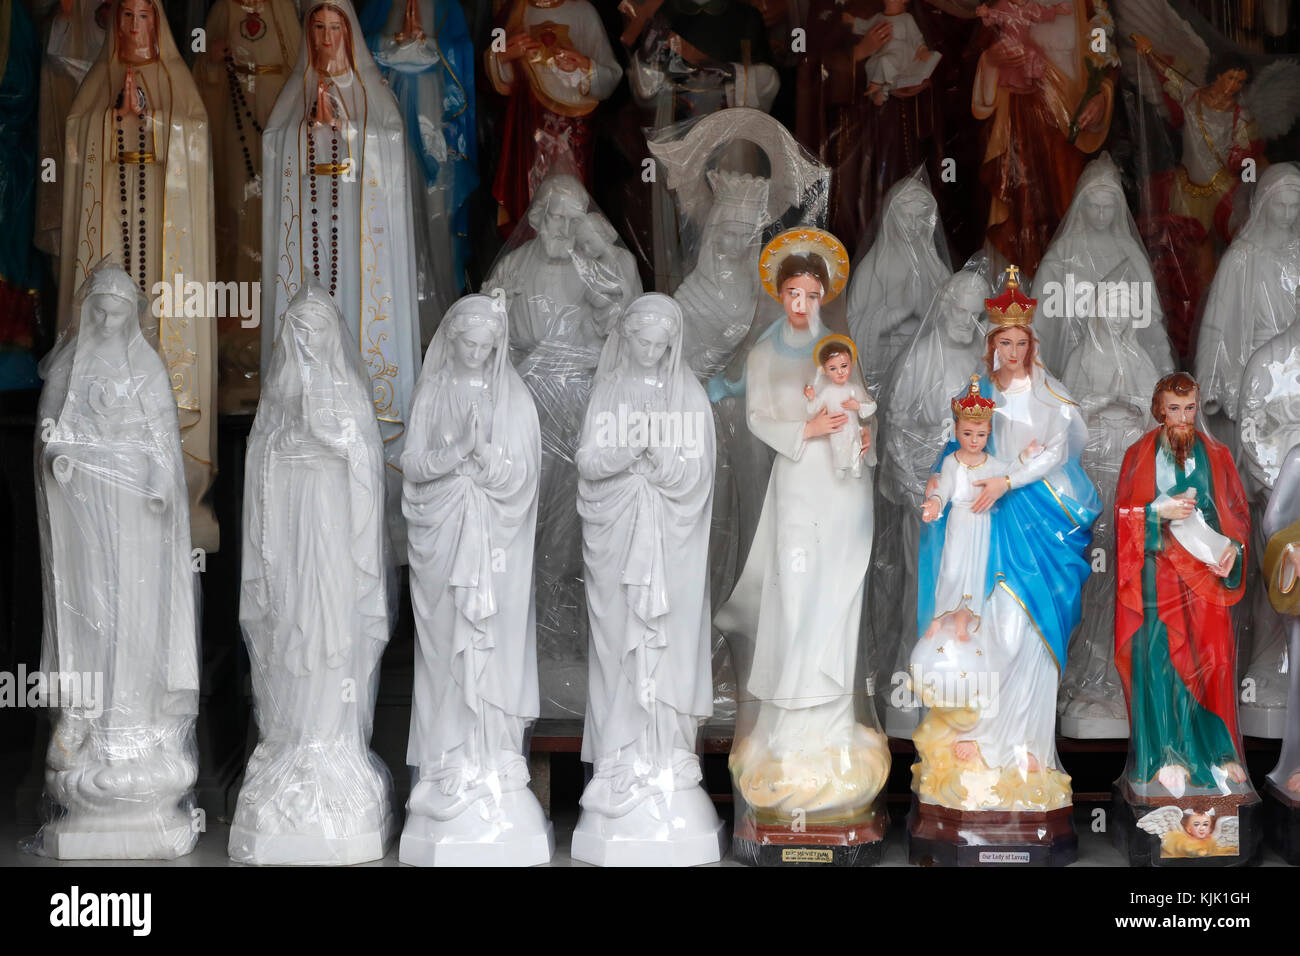 Magasin de vente d'articles religieux chrétiens. Sainte Vierge des statues. Ho Chi Minh Ville. Le Vietnam. Banque D'Images